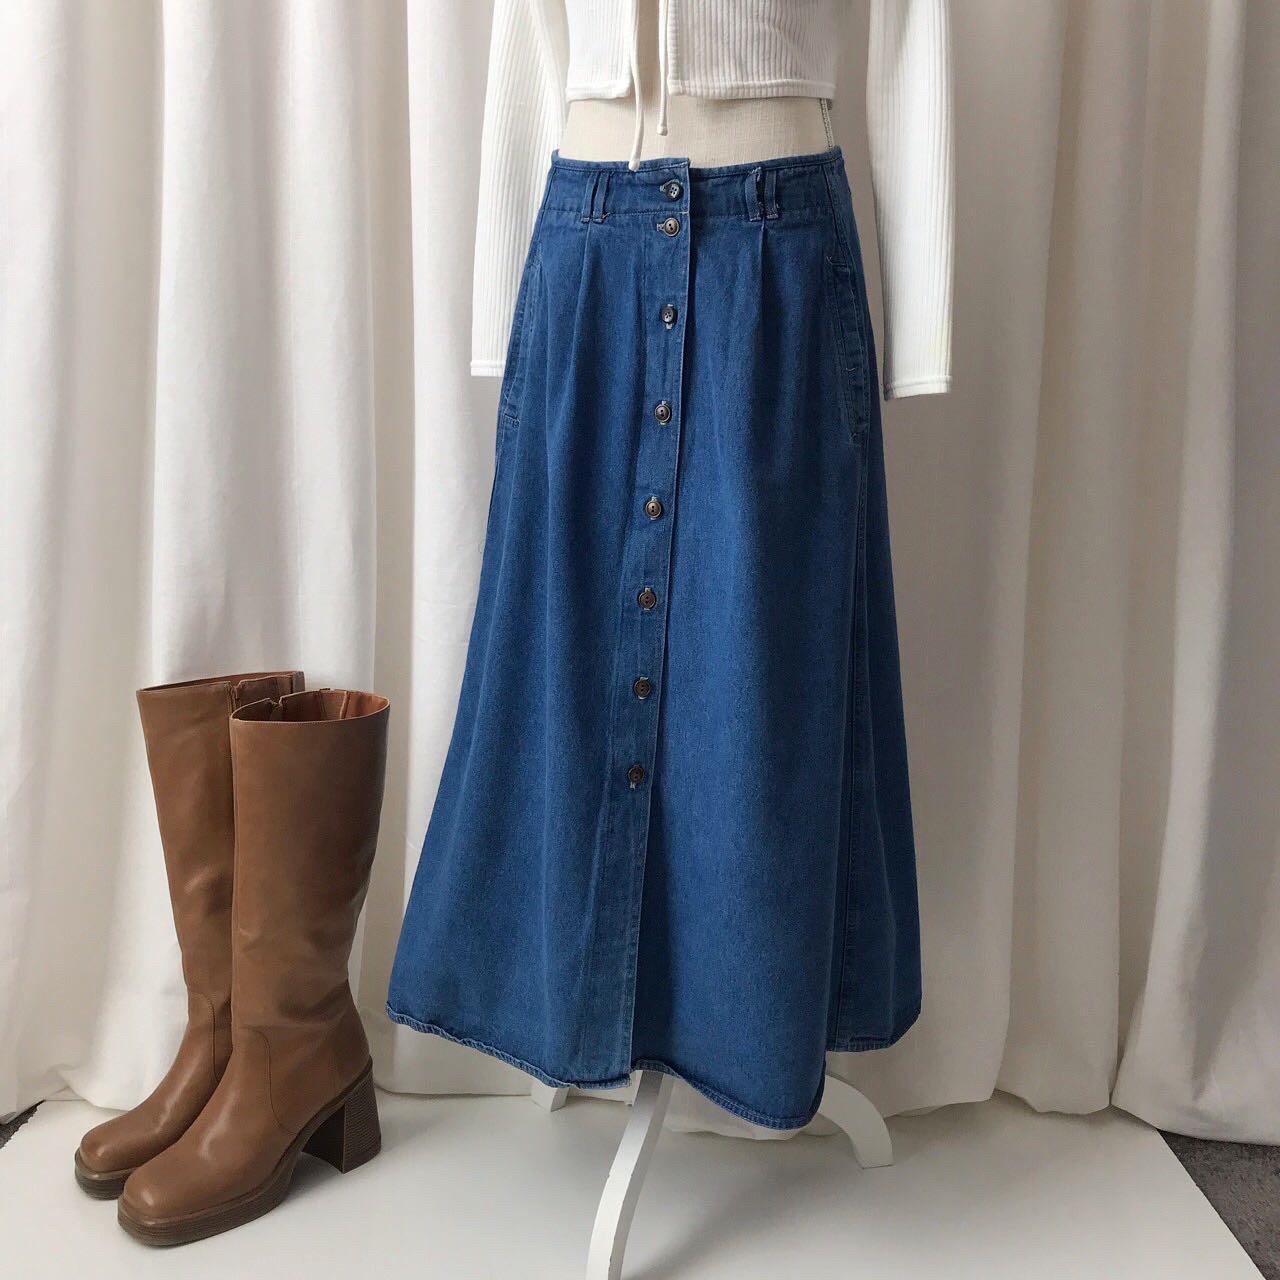 Vintage denim pleated skirt Buy one get 1 free... - Depop